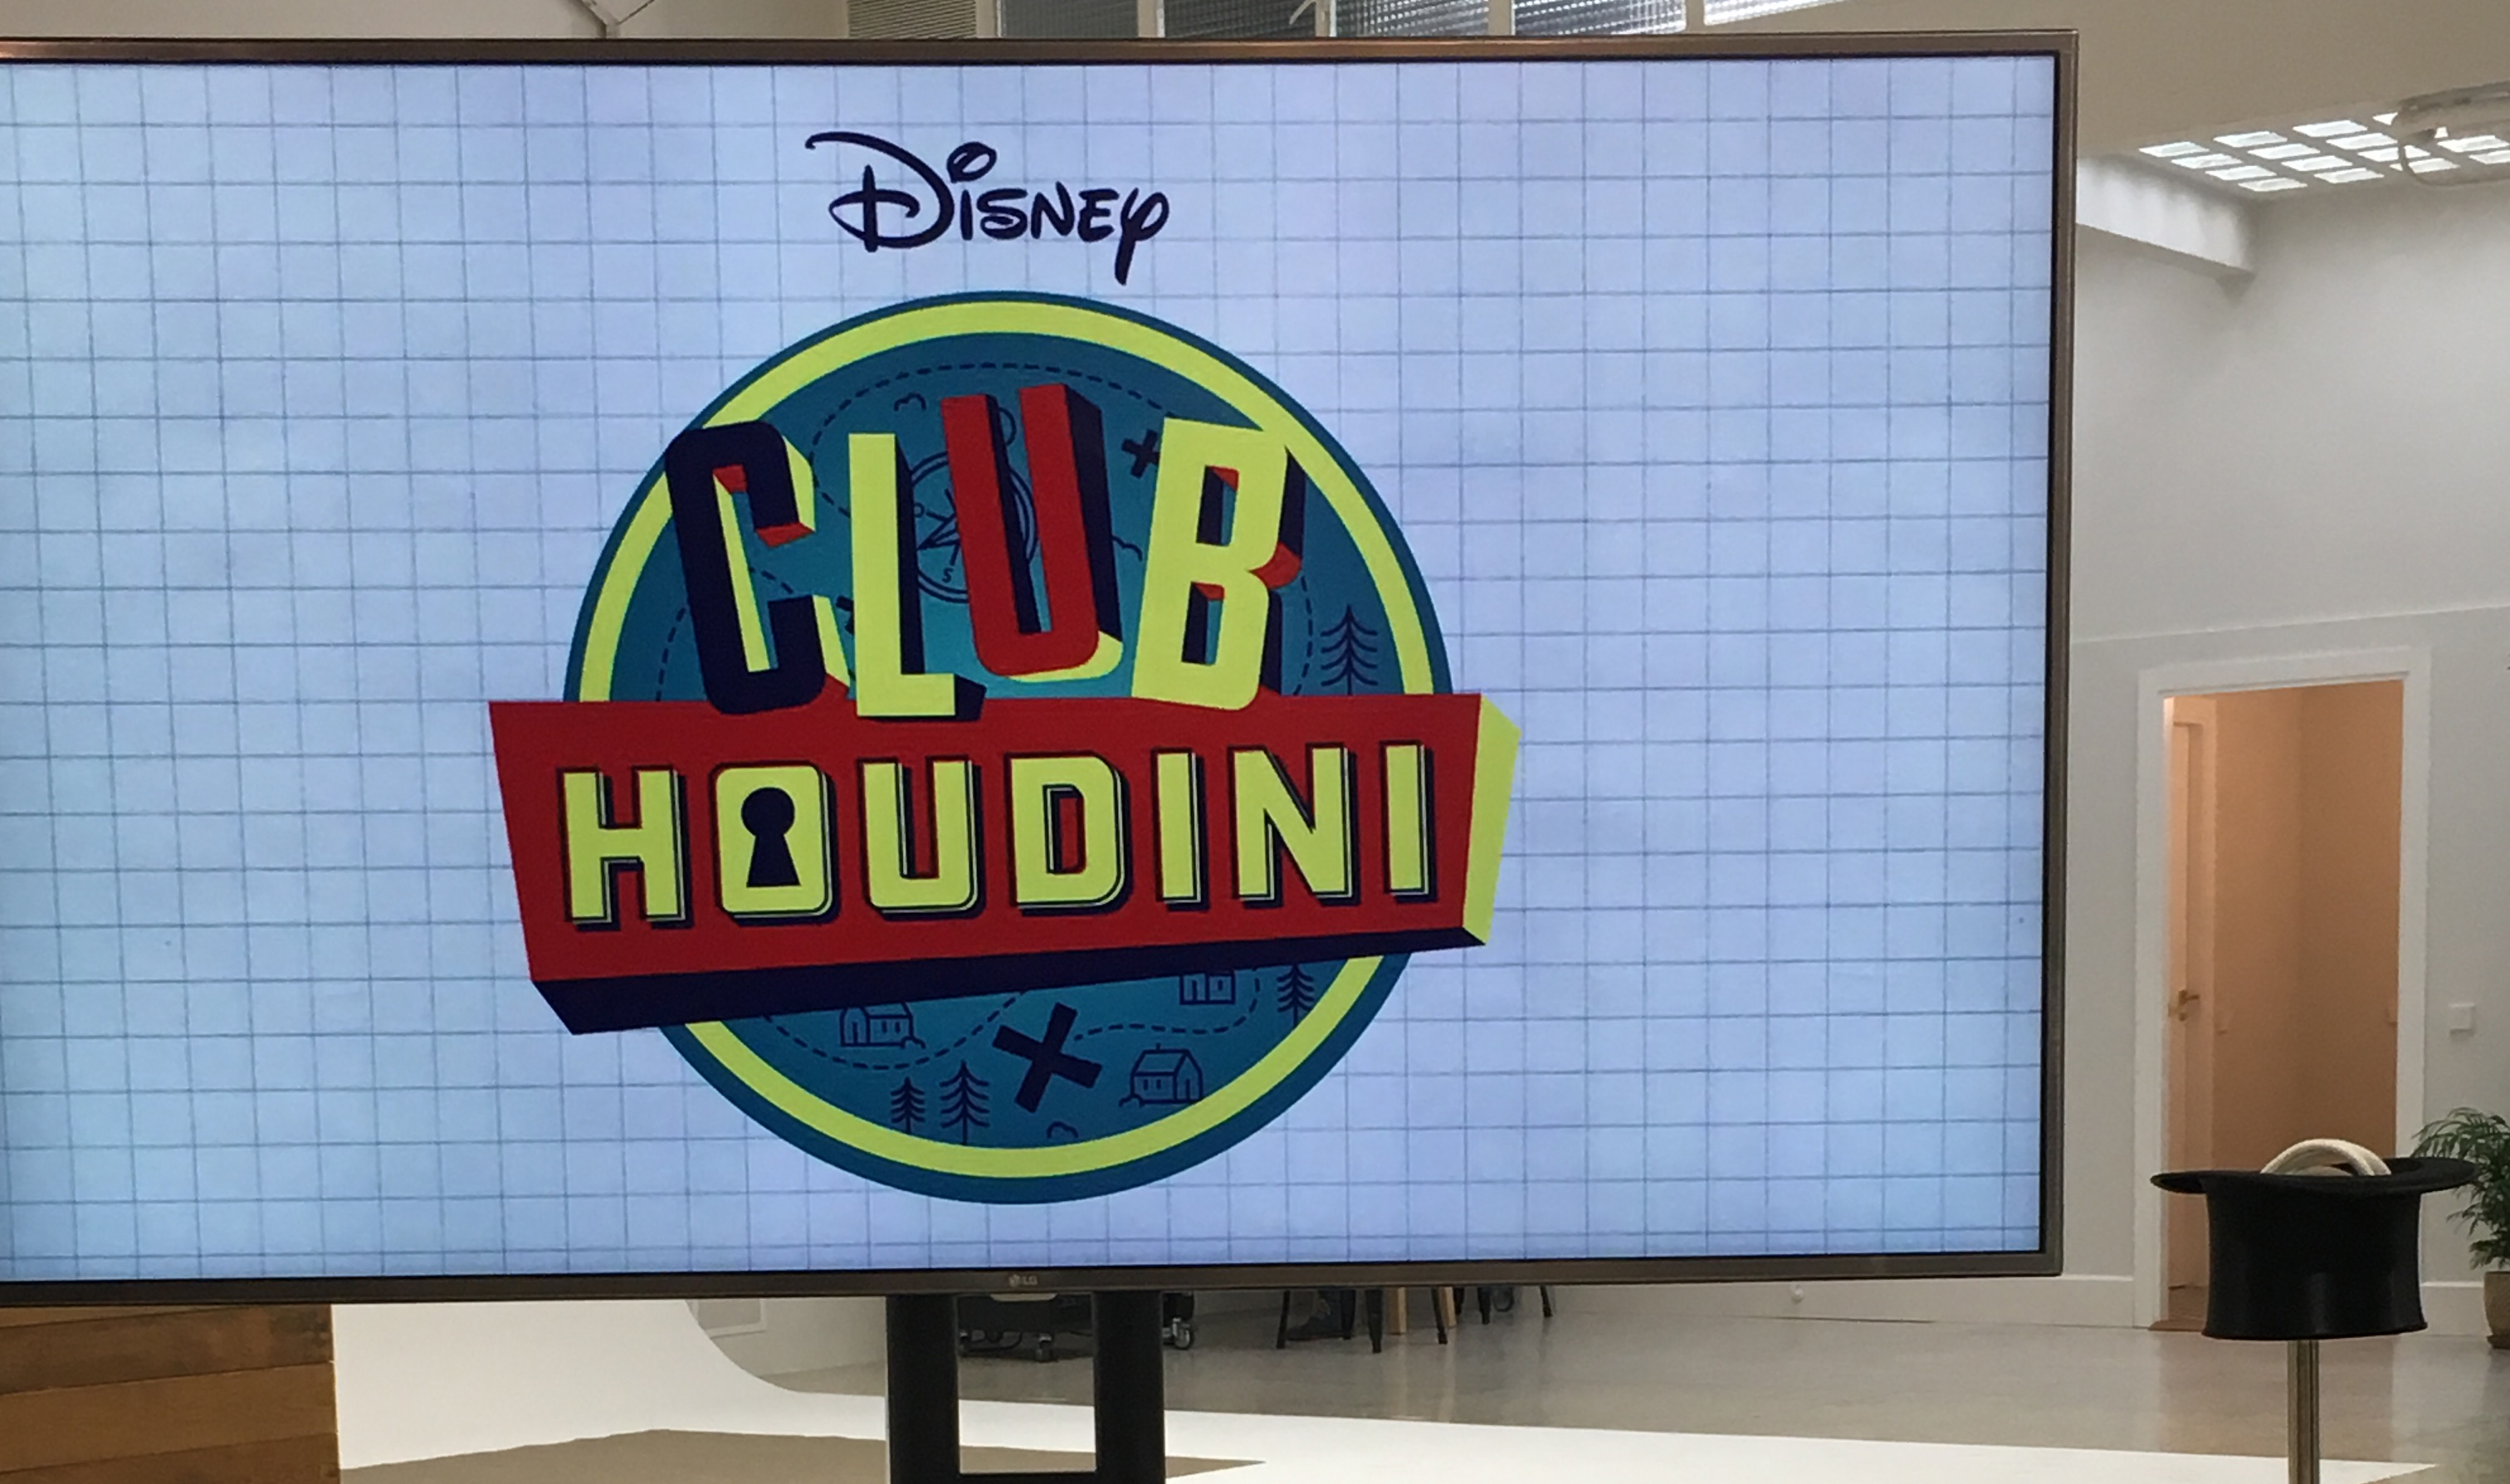 Club Houdini Disney Channel